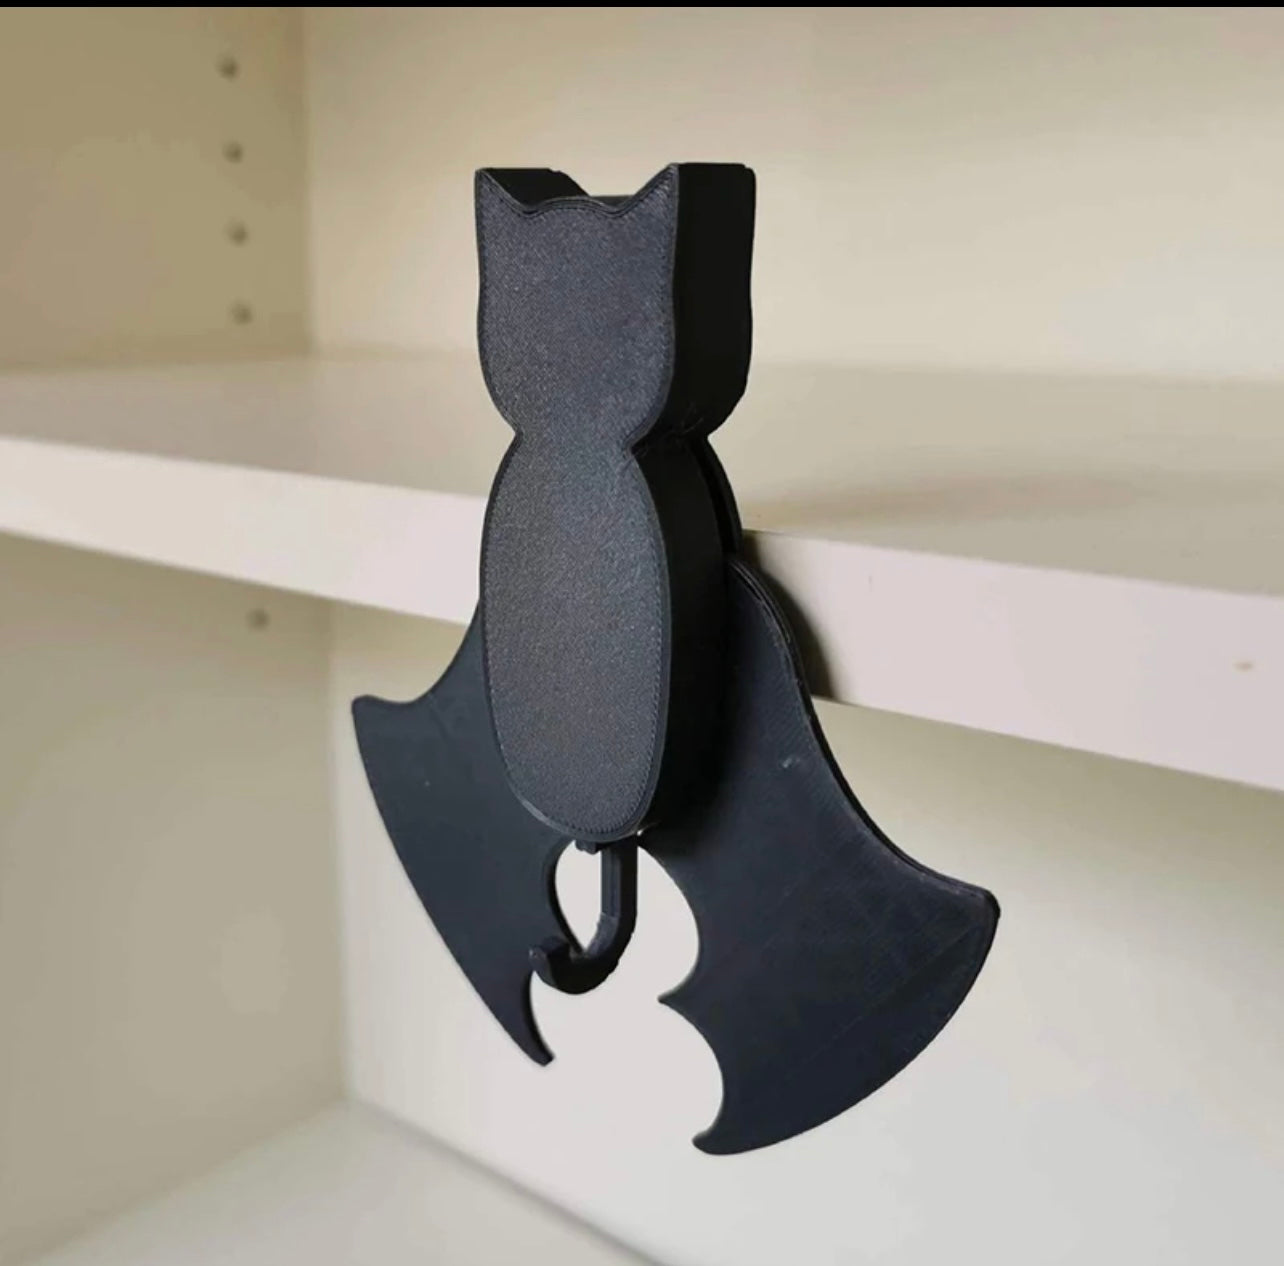 Bat wall key holder